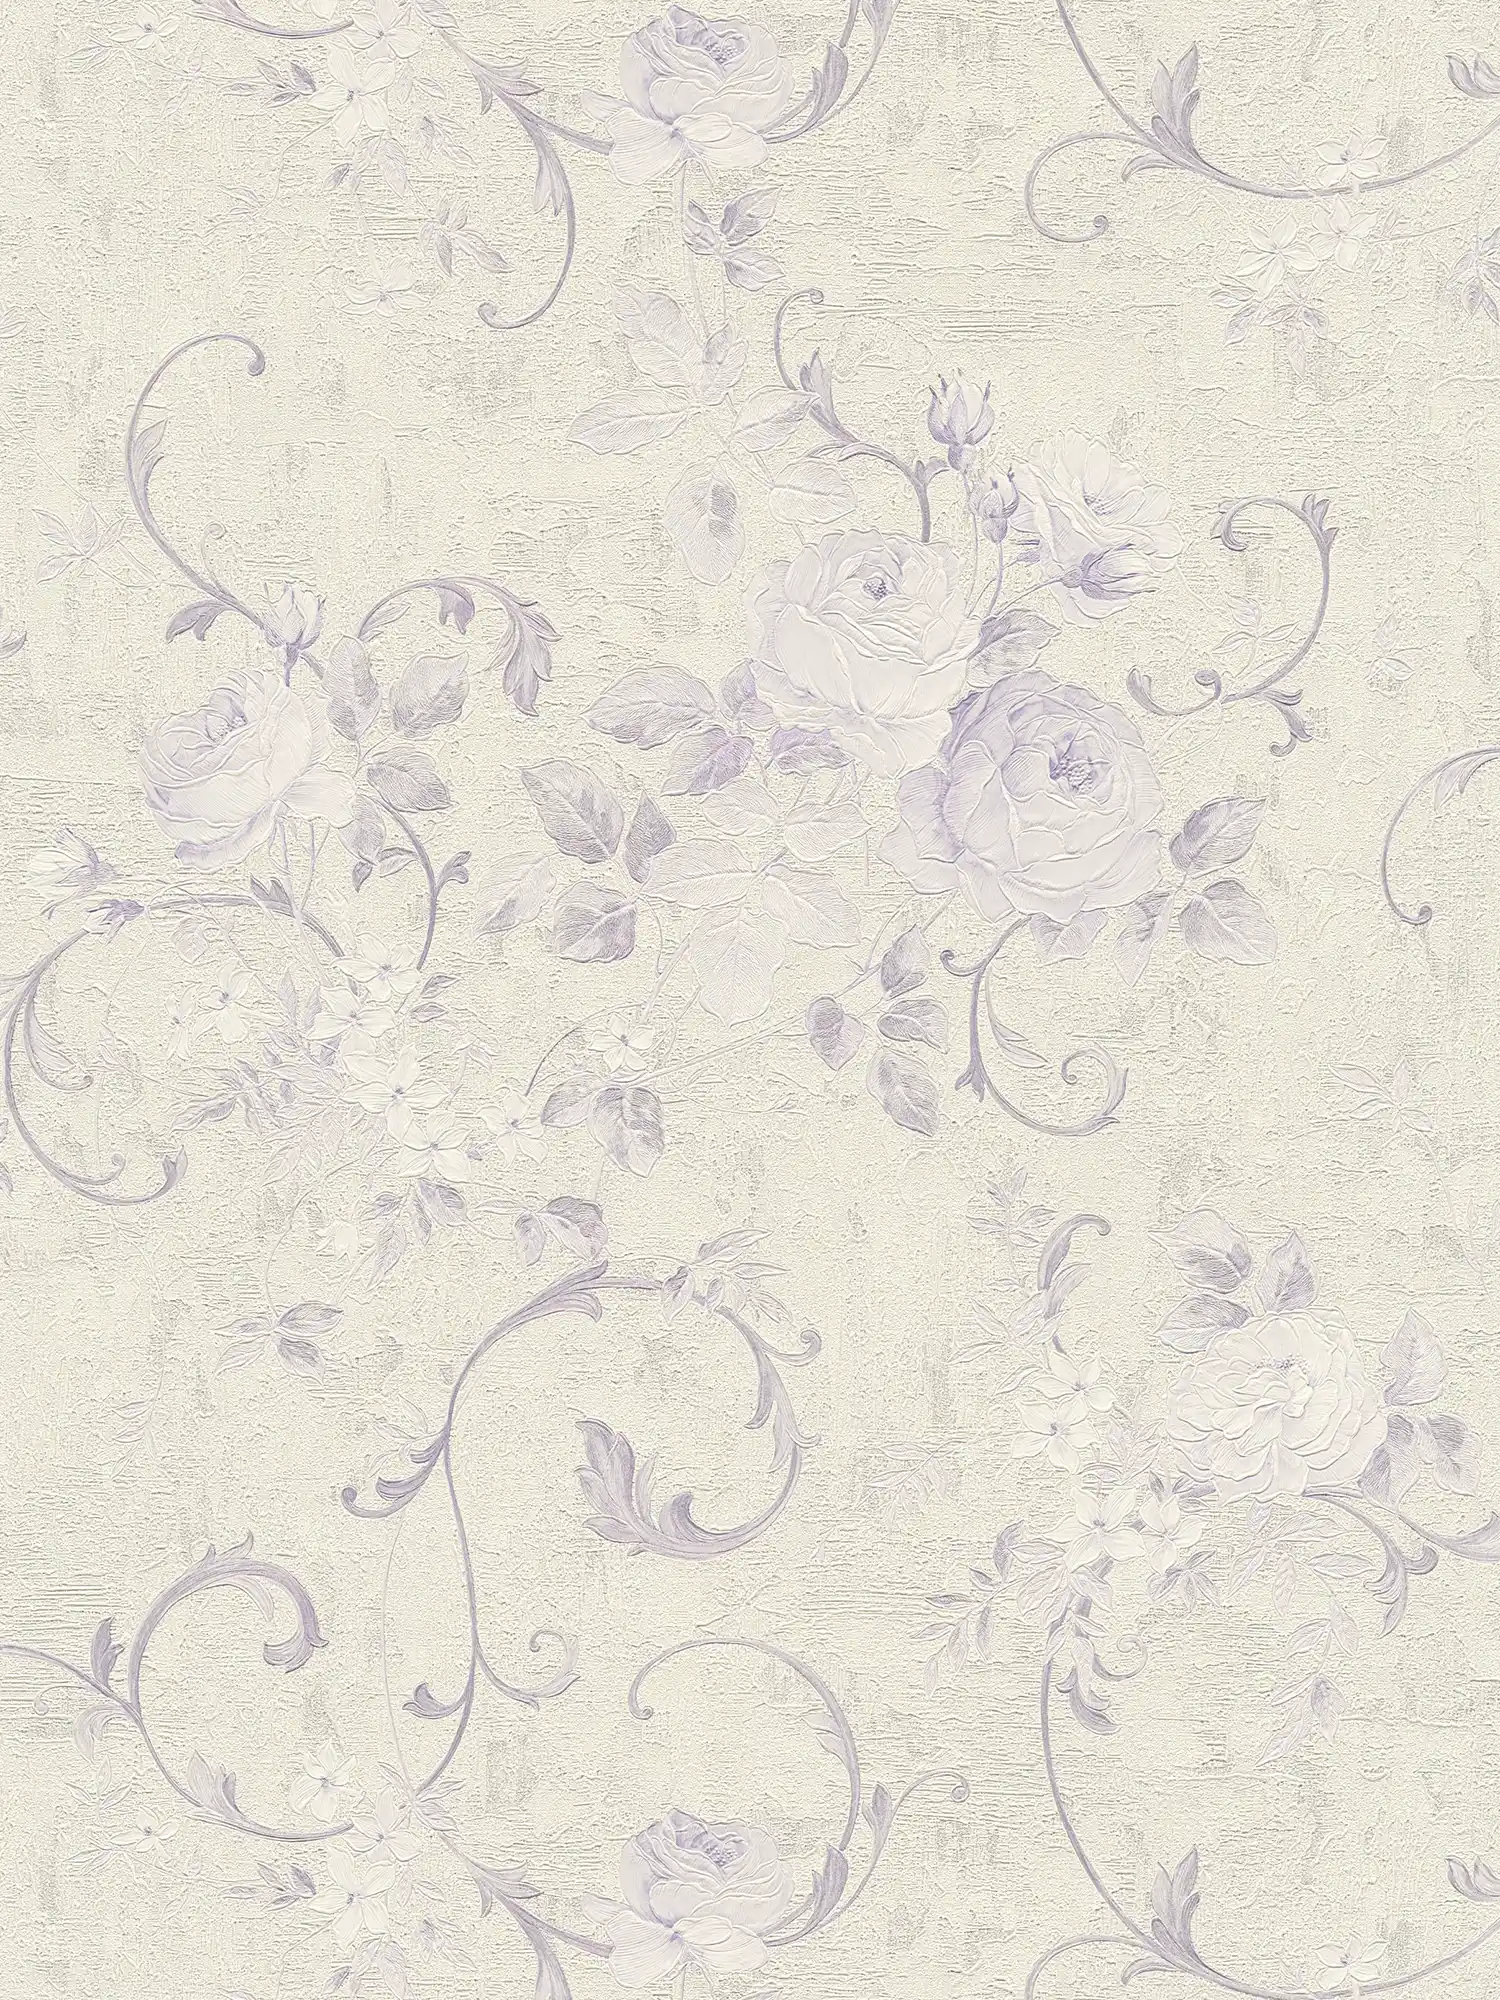 papel pintado con motivos de rosas y zarcillos de hojas - crema, metálico, morado
